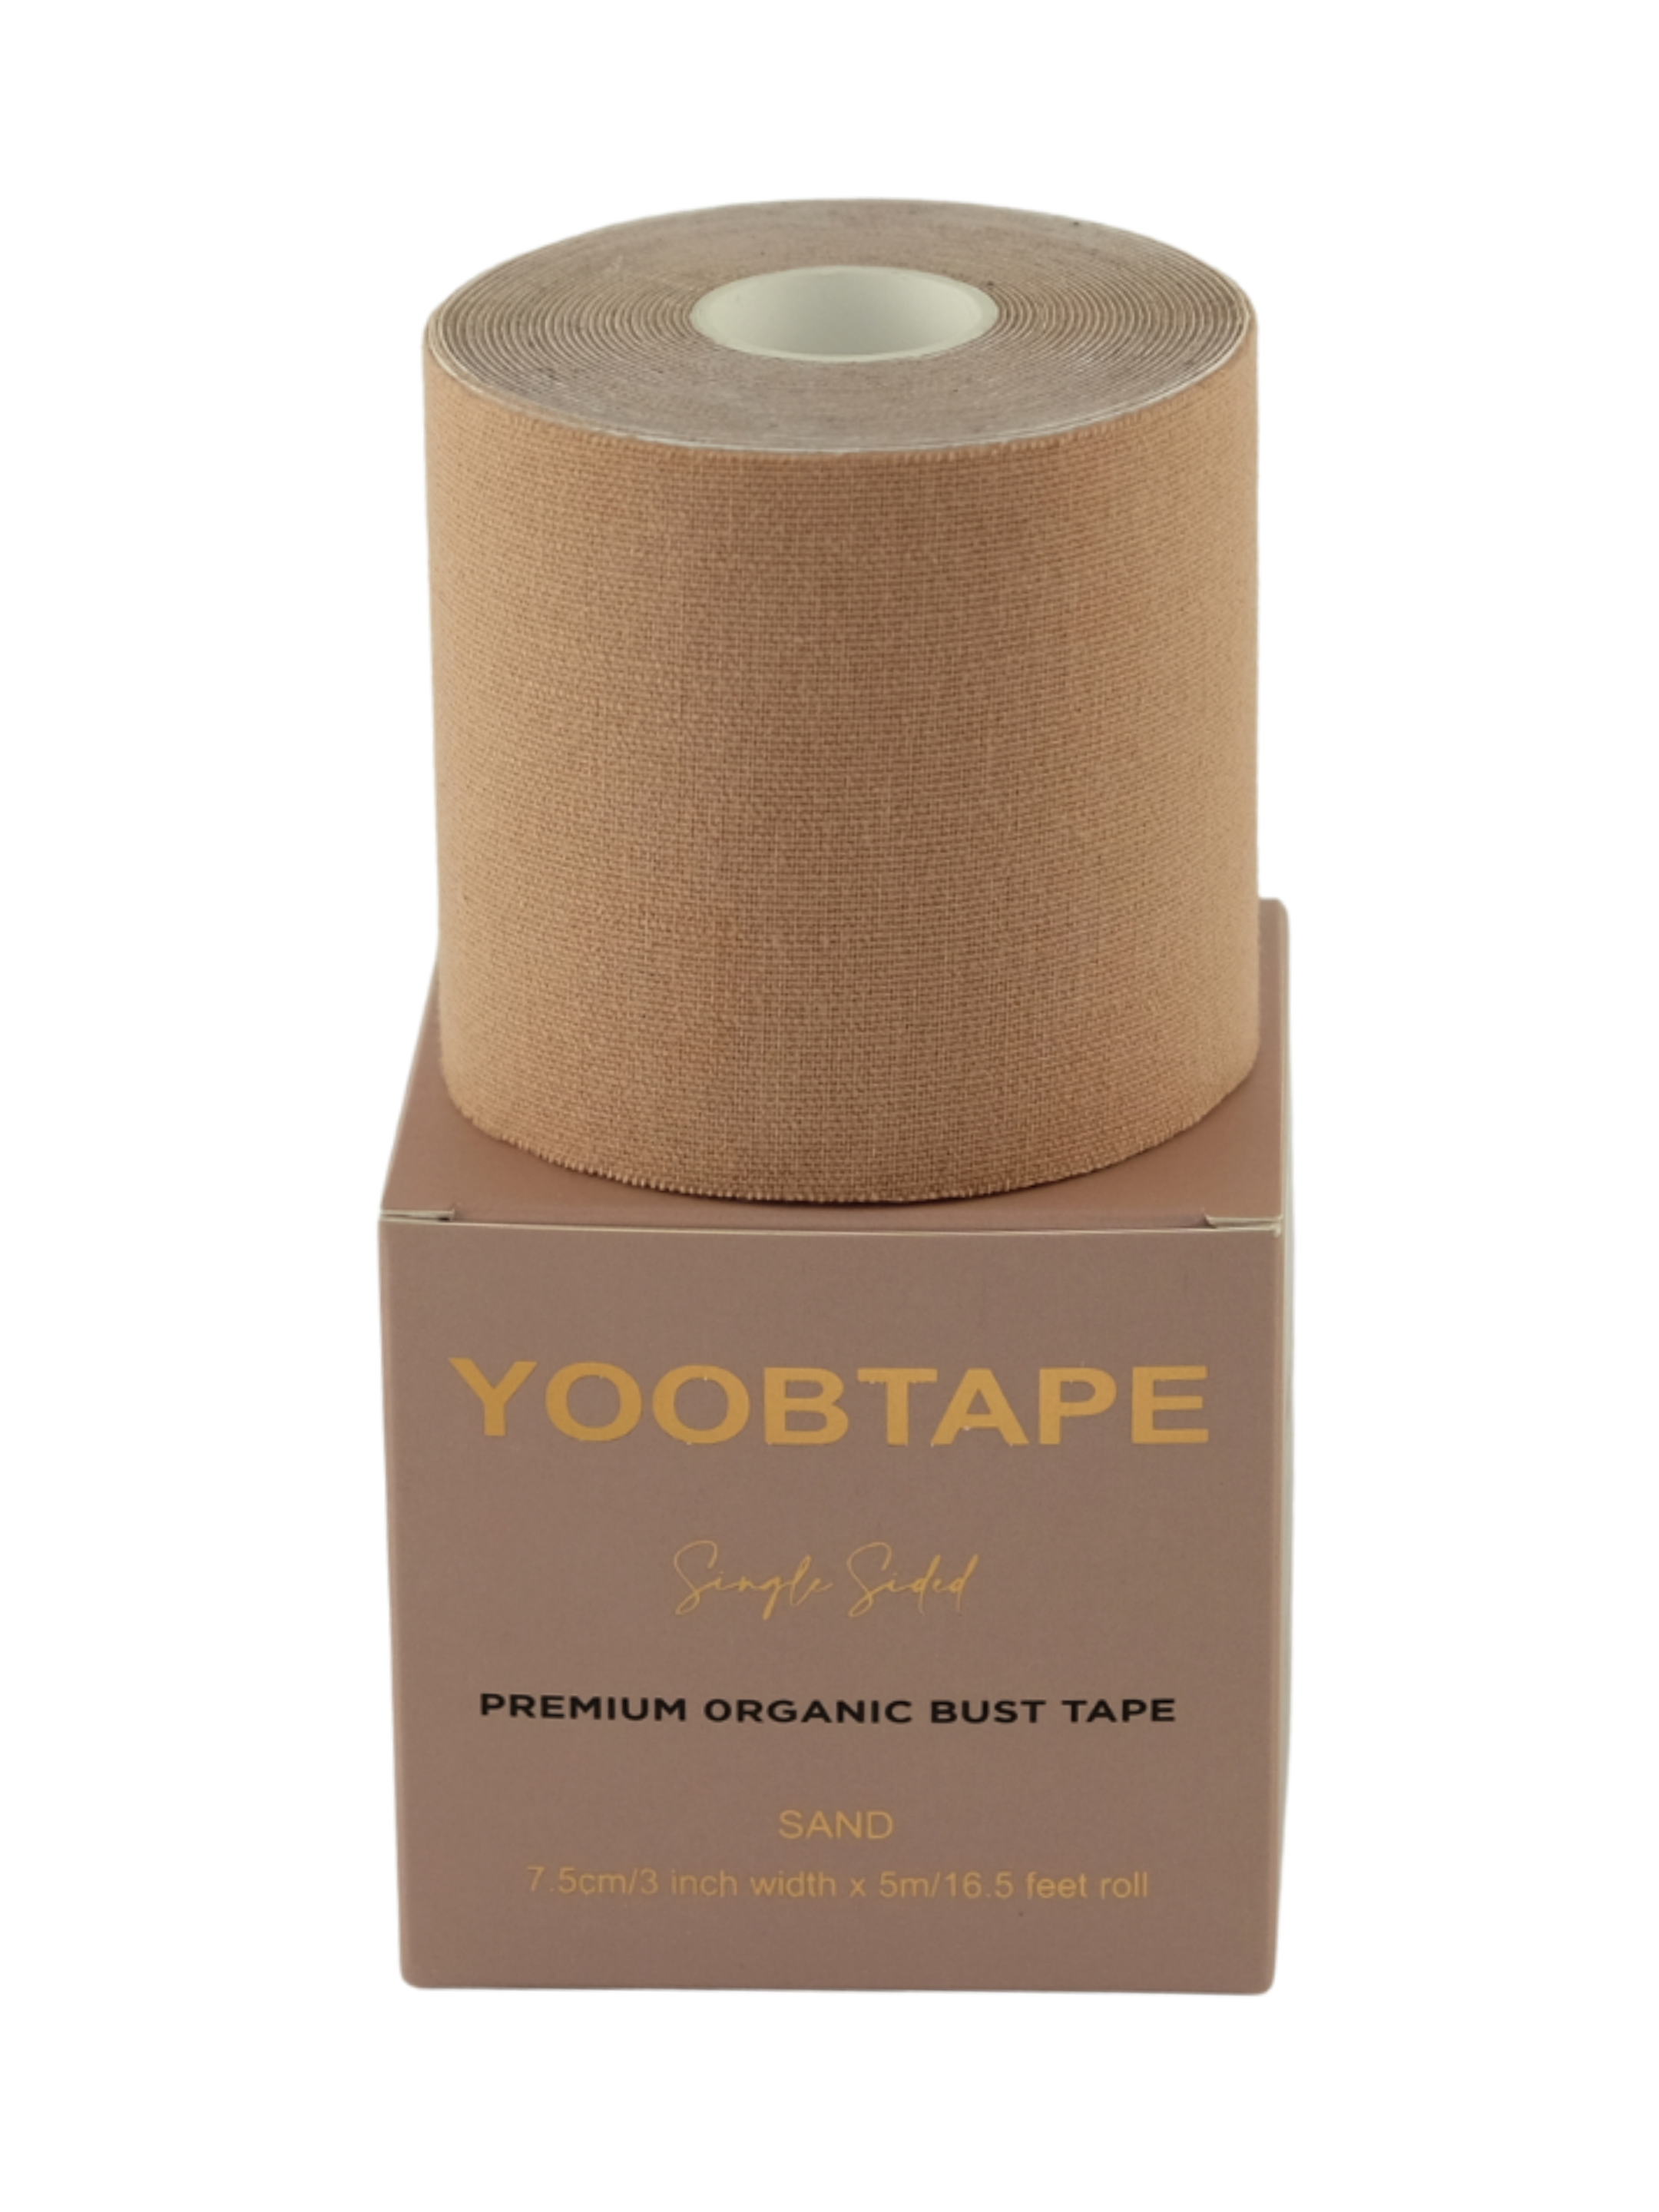 YOOBTAPE Premium Single Sided Bust Tape - Sand